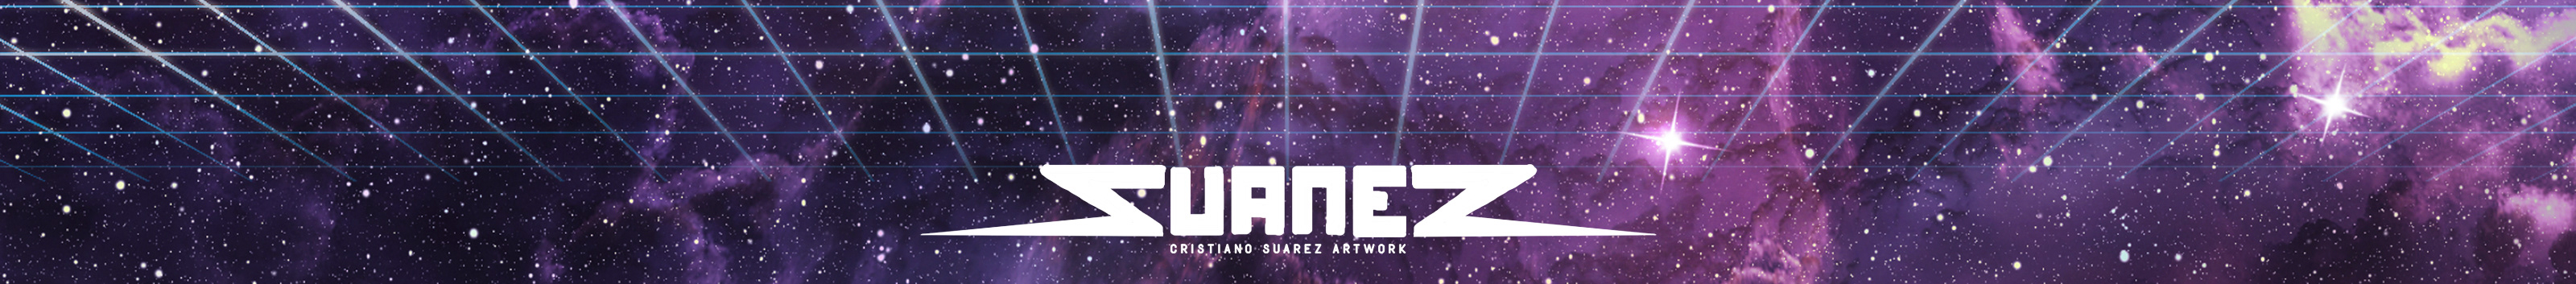 Cristiano Suarez's profile banner